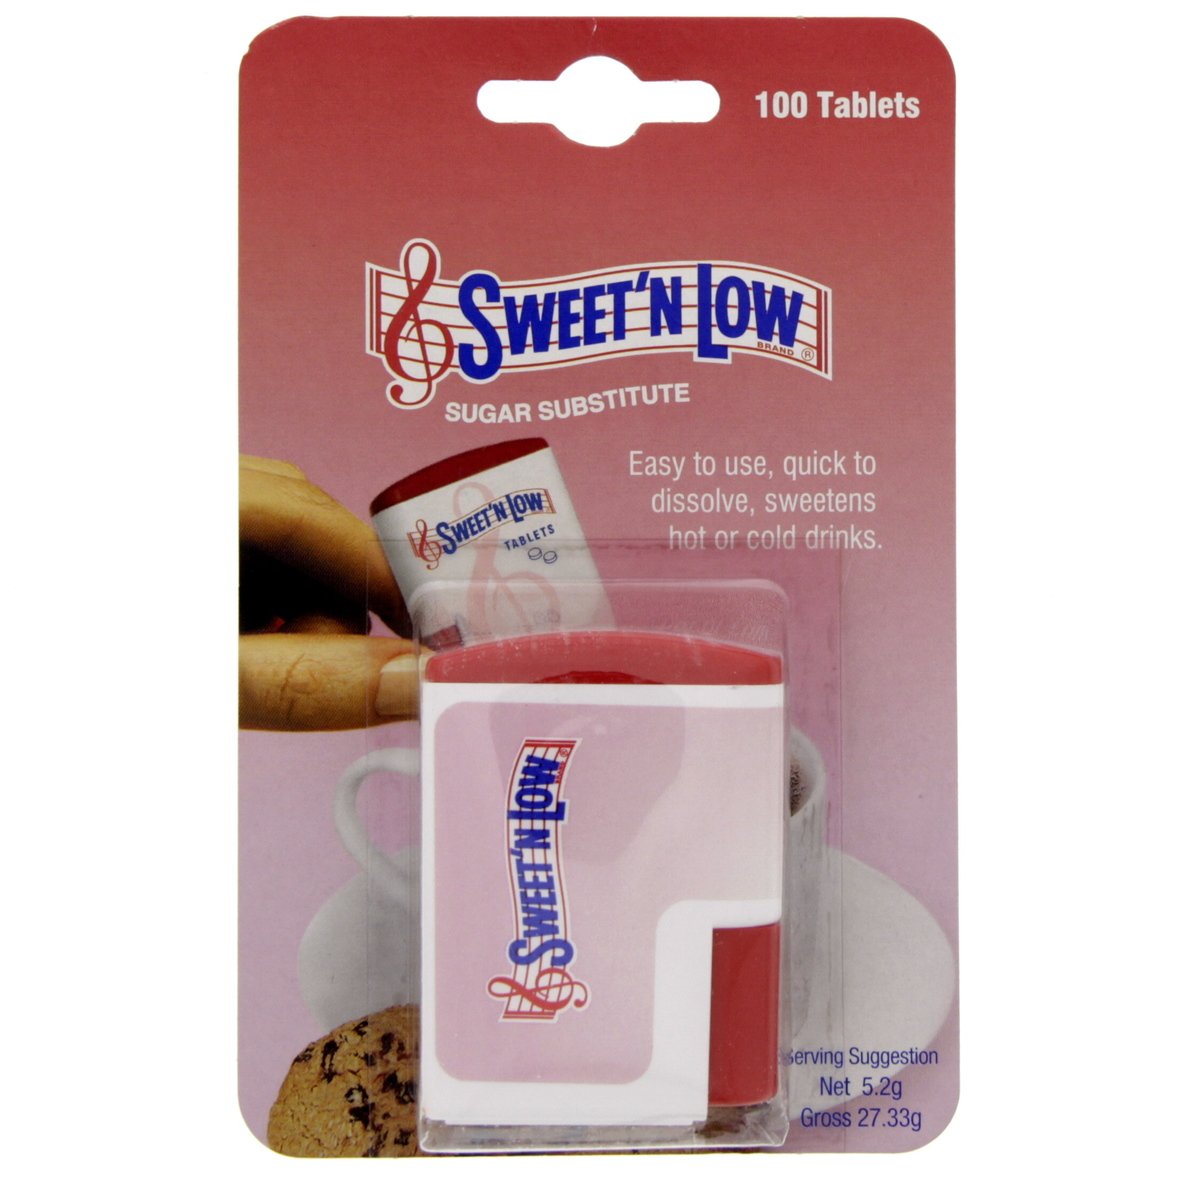 Sweet'n Low Sugar Substitute Sweetener 100 pcs